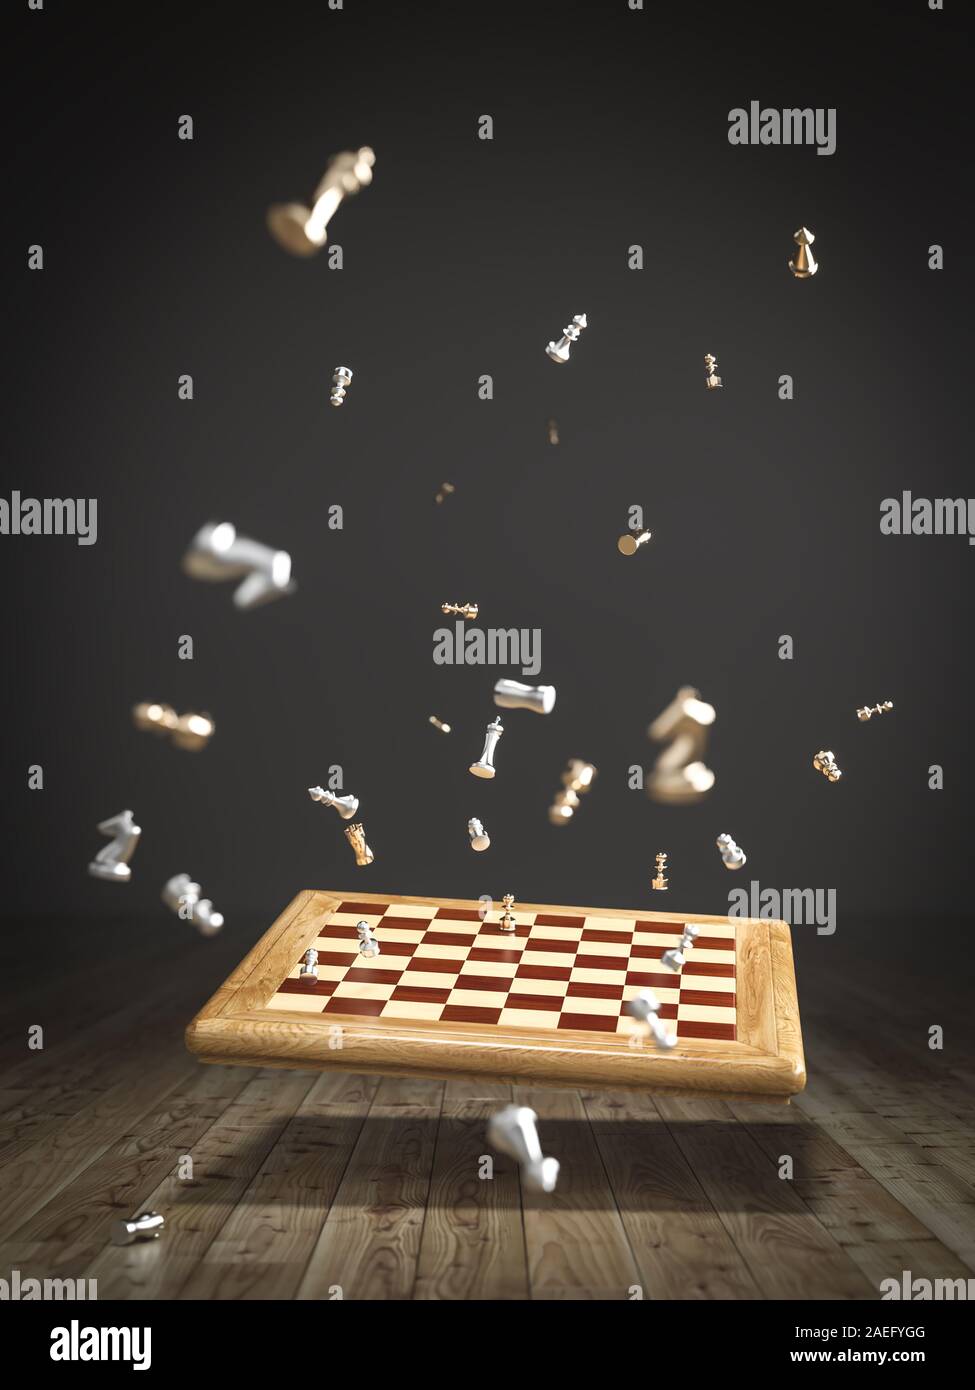 Image d'un échiquier qui tombent sur le plancher en bois, dispersés et voler des pièces de jeu. L'image de rendu 3d. Banque D'Images